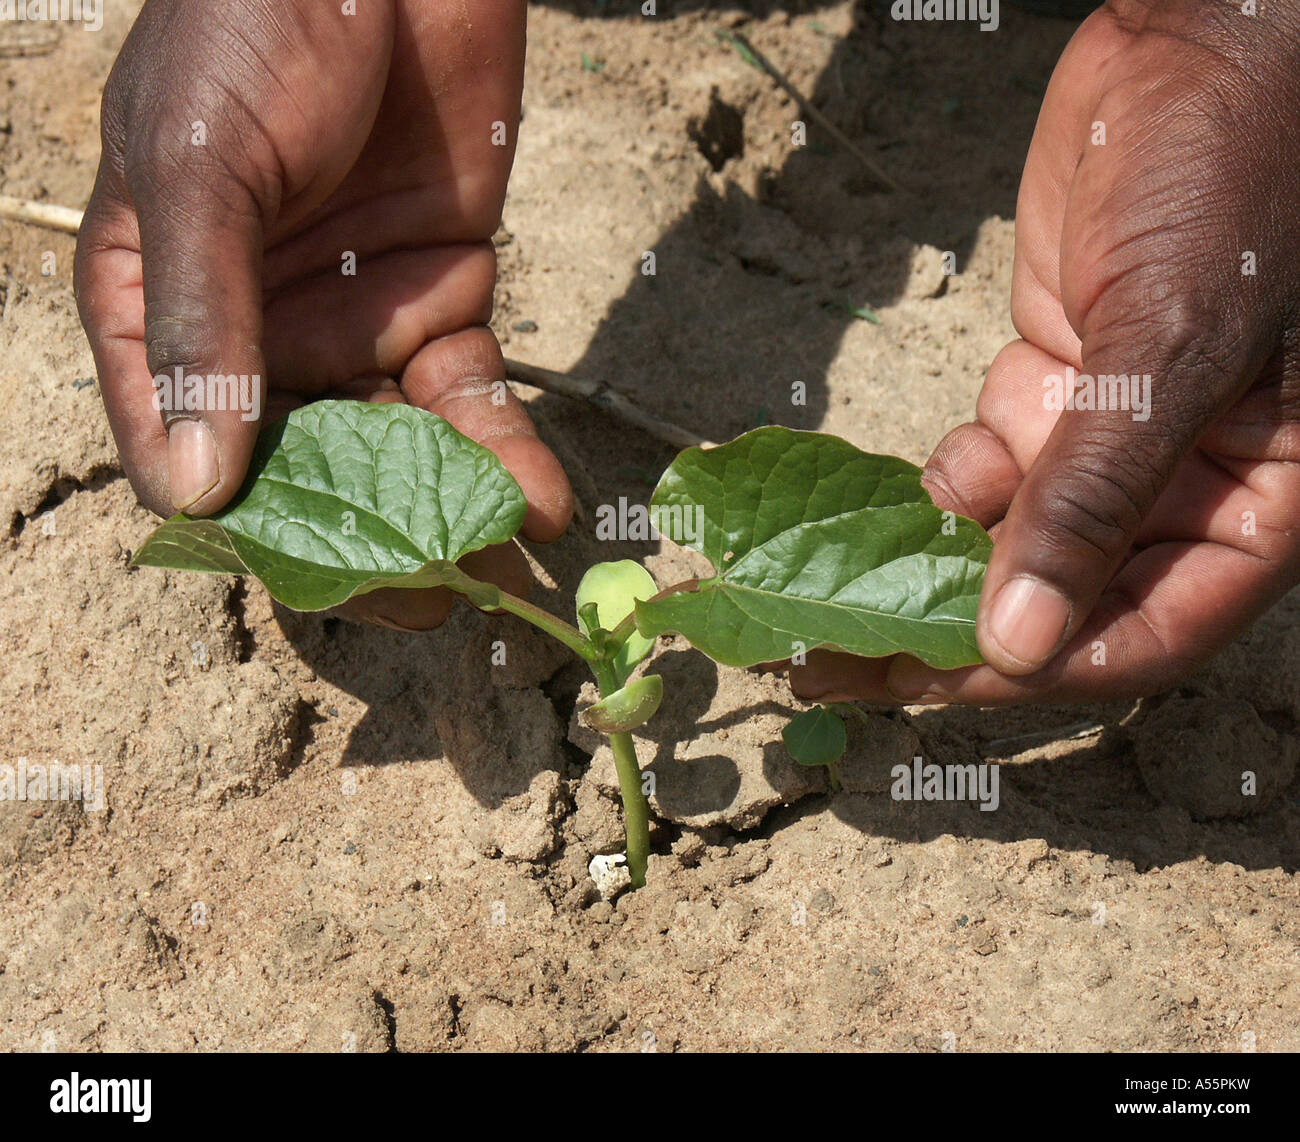 Est Painet1671 Zambie Lusaka des semis de haricots de velours vert au pays en développement, de pays moins développés économiquement de la culture Banque D'Images